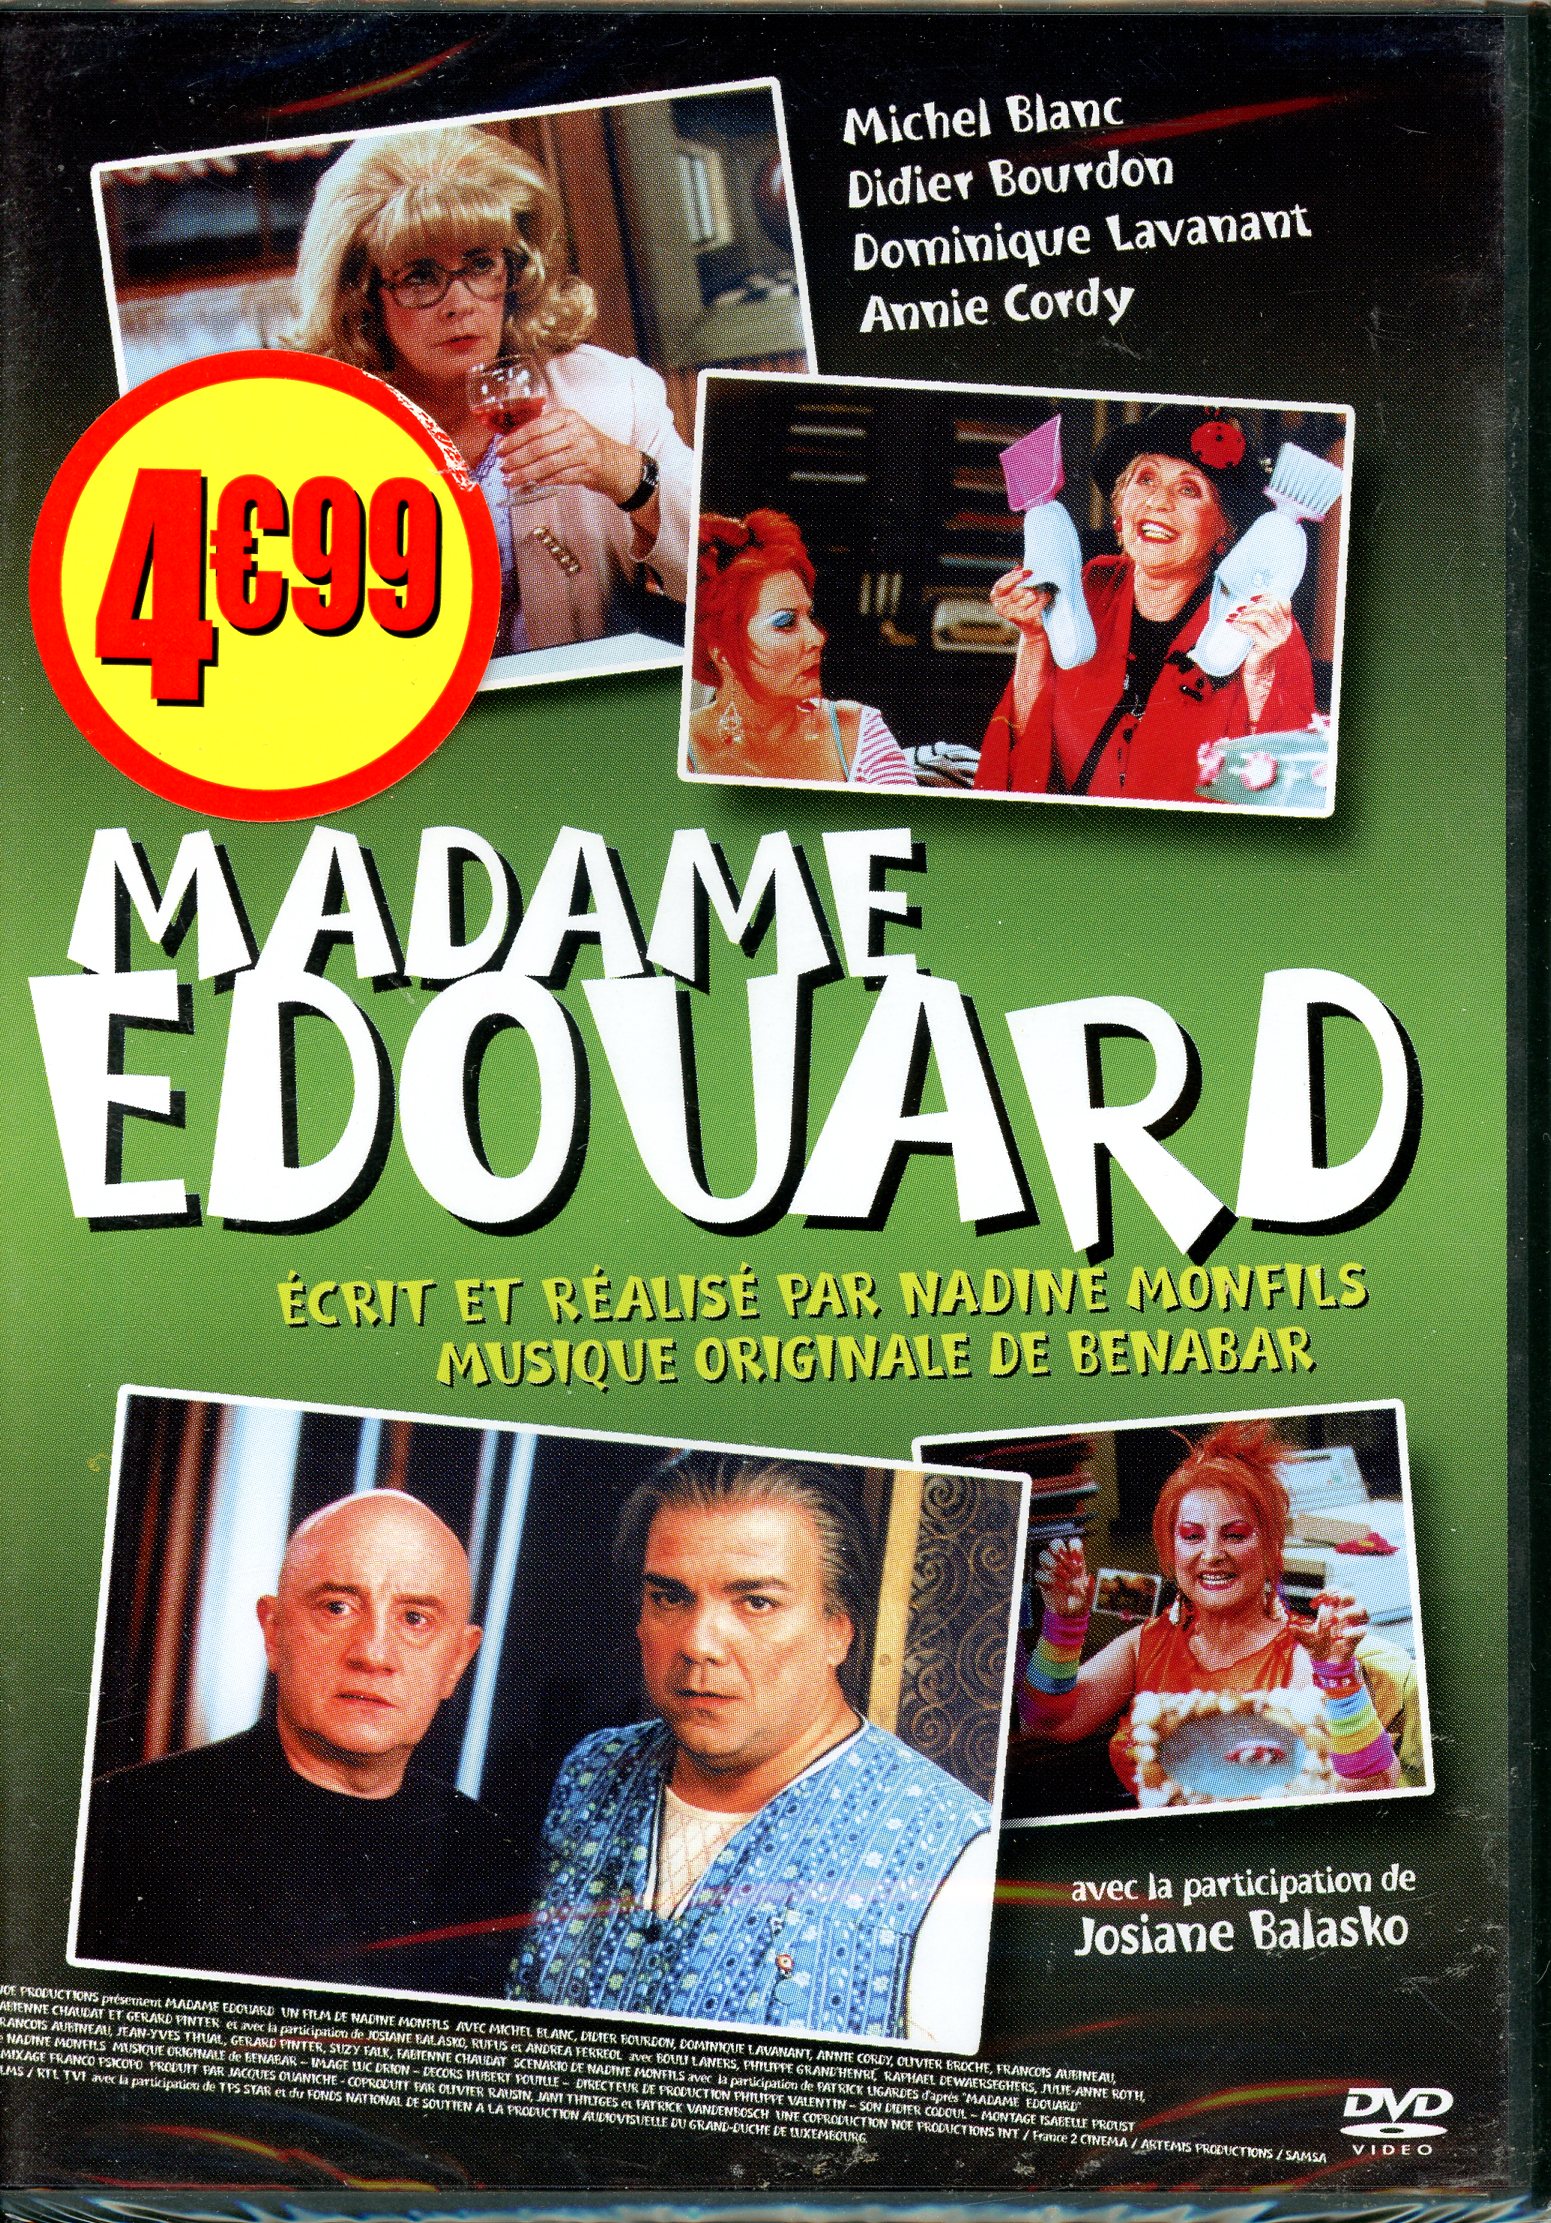 MADAM EDOUARD-DVD-3700173210677-LEMASTERBROCKERS-DVD NEUF SOUS BLISTER